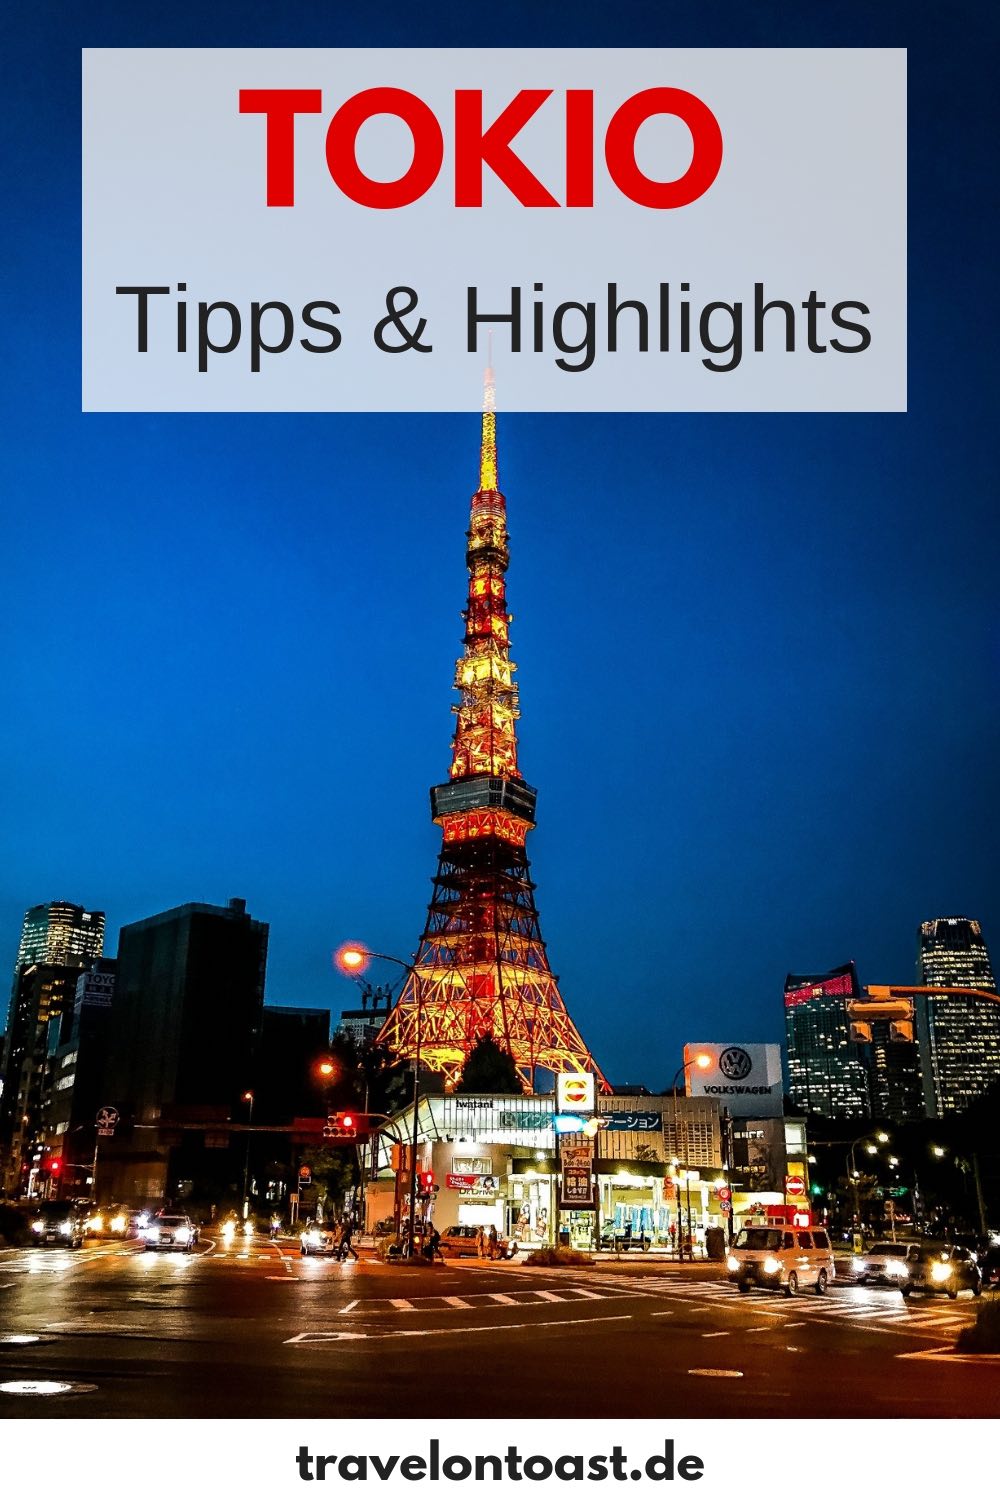 Tokio-gids: De beste Tokyo-tips en de mooiste Tokio-attracties - zoals Shibuya Crossing, Tokyo Skytree, Tokyo Tower of Harajuku - voor uw Tokio-reis of Japan-reis. Plus tips over reisplanning, vlucht, hotel, winkelen en eten. #Tokio #Tokyo #Japan